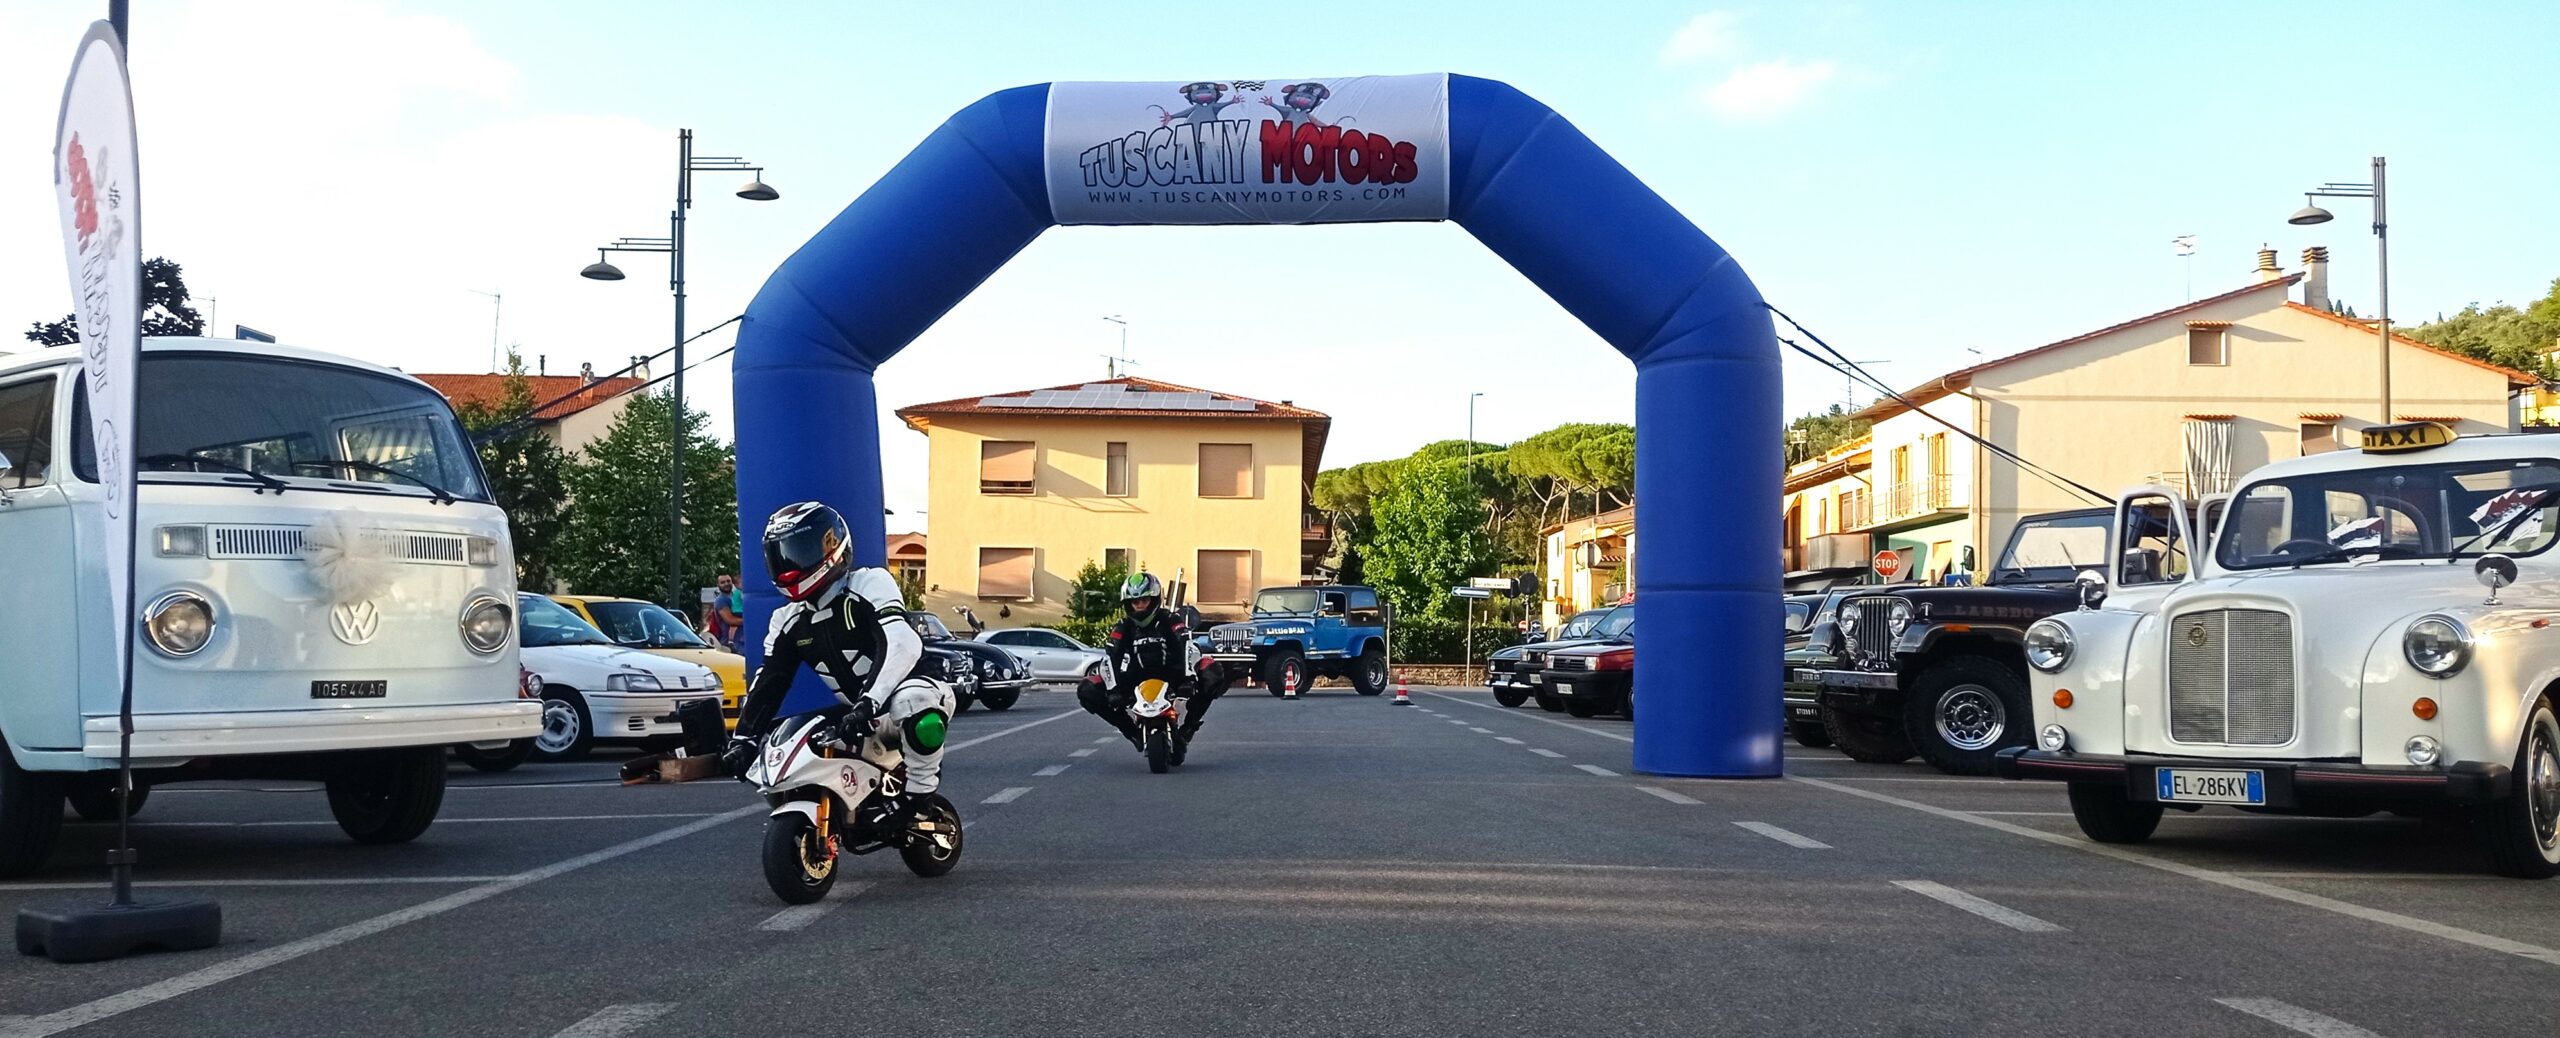 Tuscany Motors un Gran Prix “in casa”